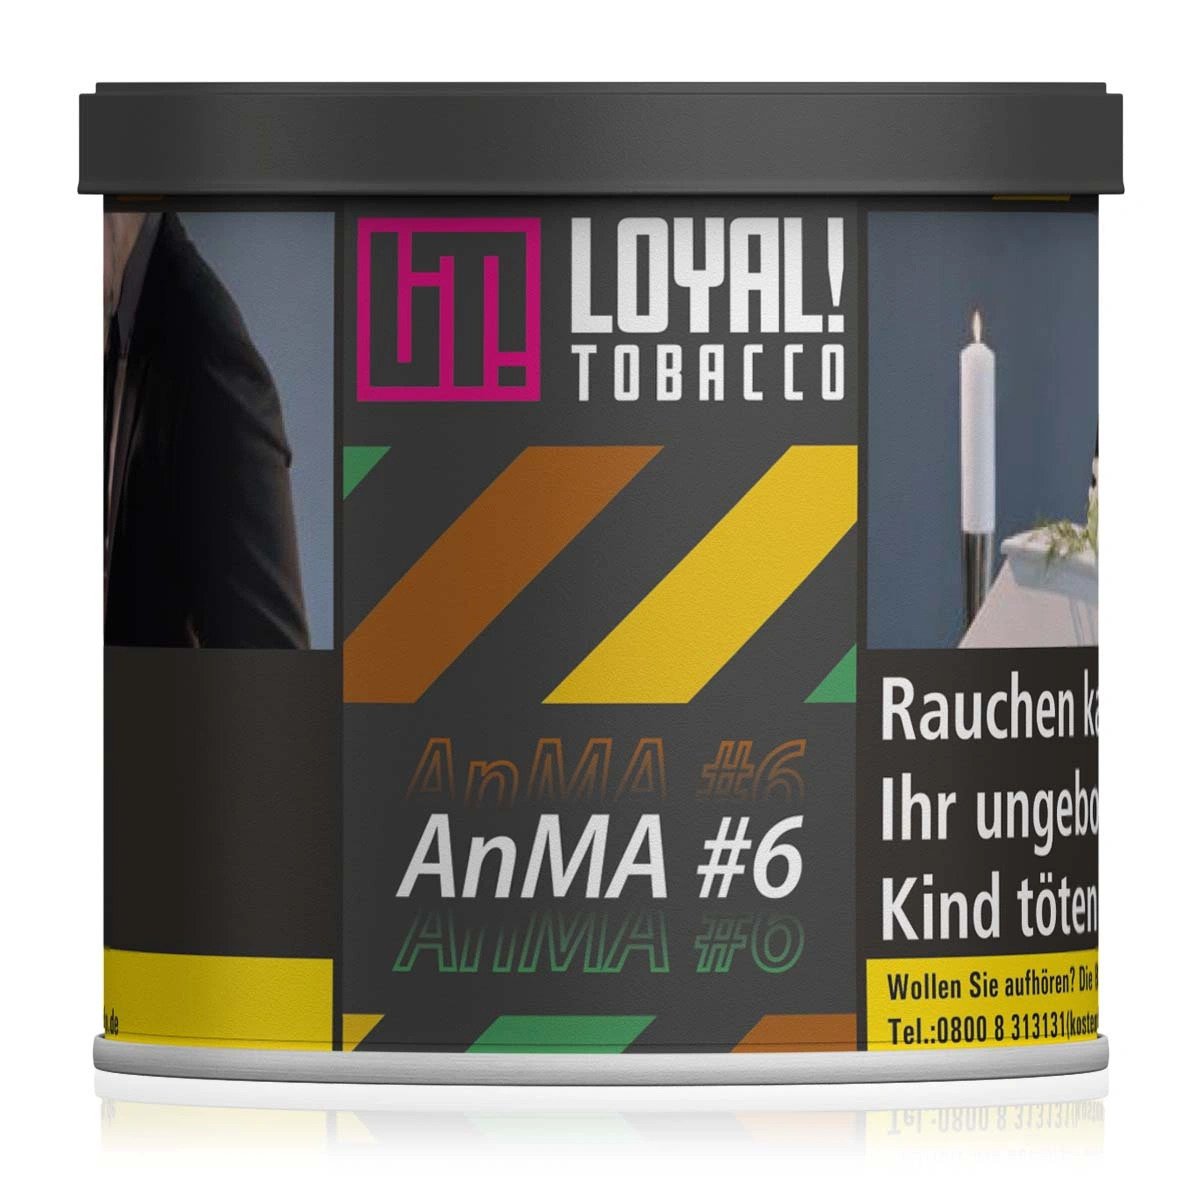 Loyal Tobacco | ANMA #6 | 200g